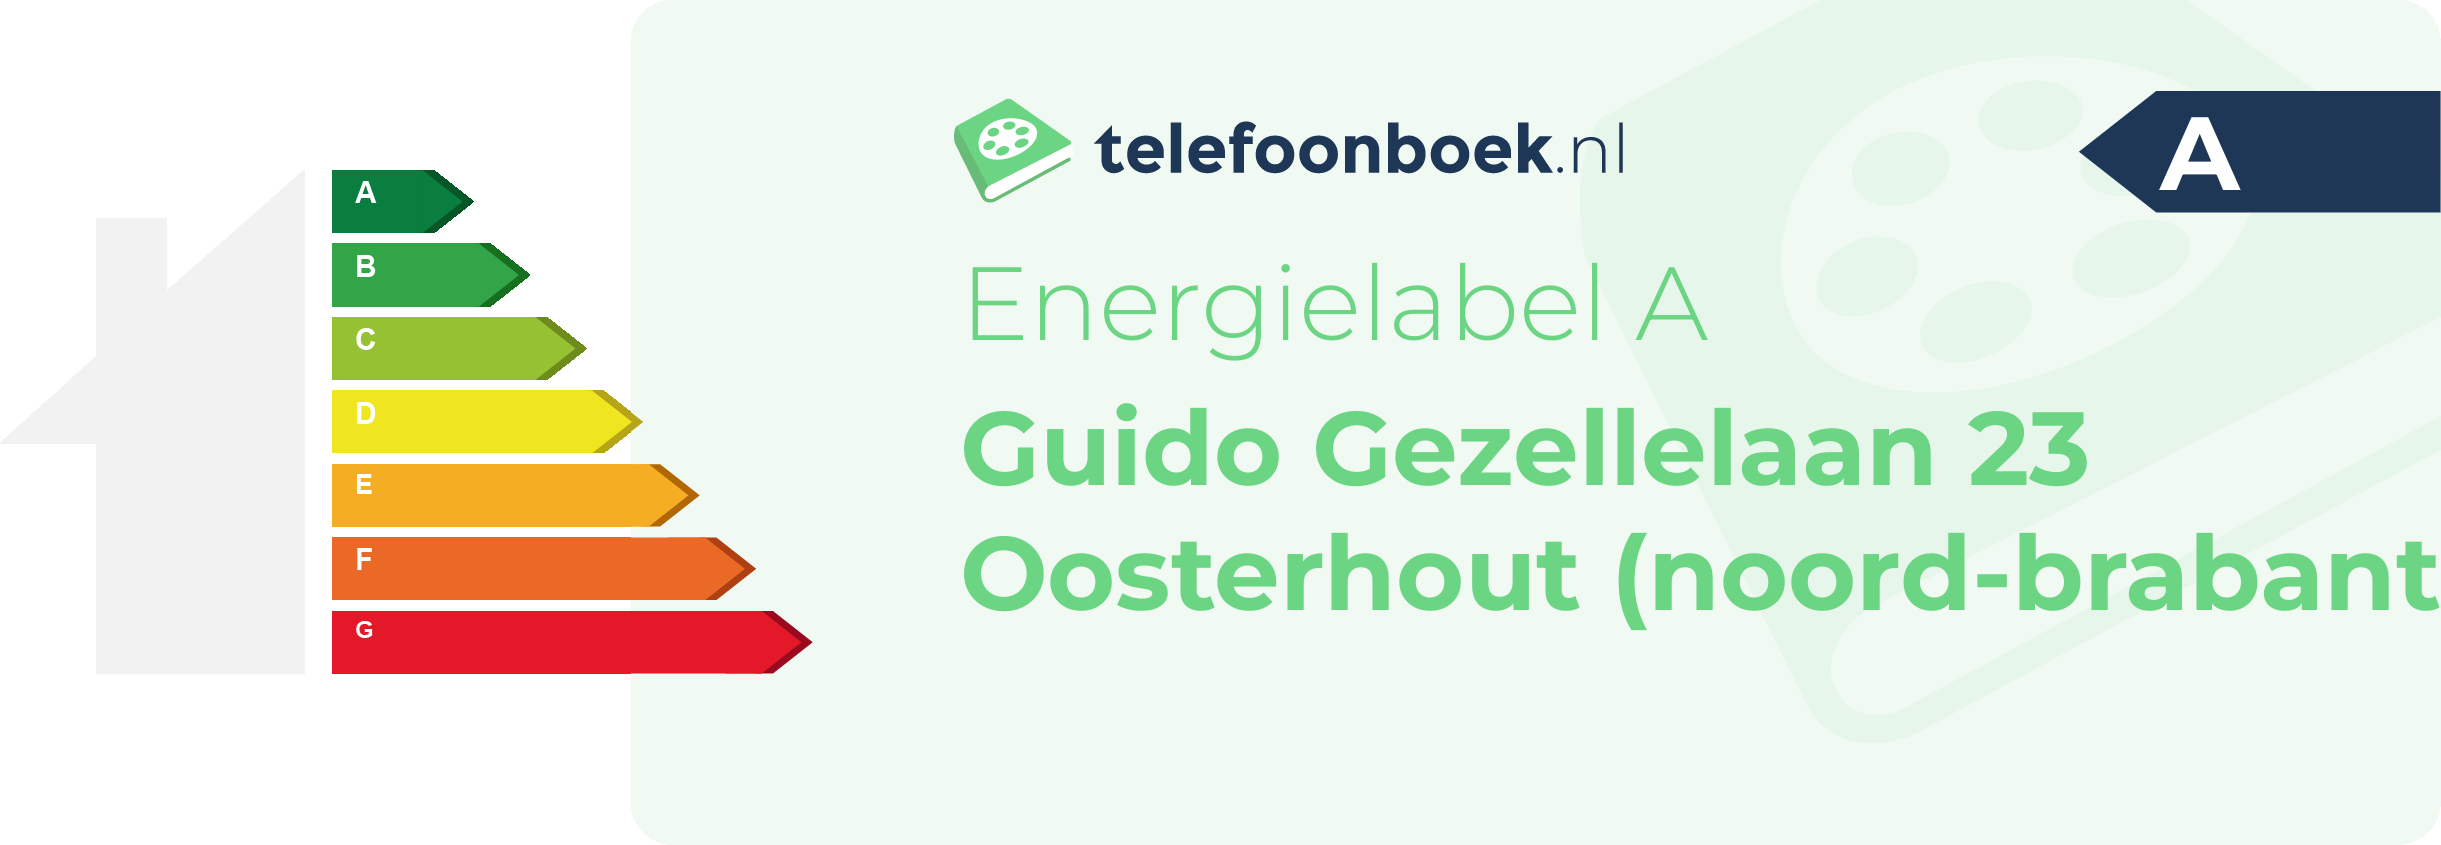 Energielabel Guido Gezellelaan 23 Oosterhout (Noord-Brabant)